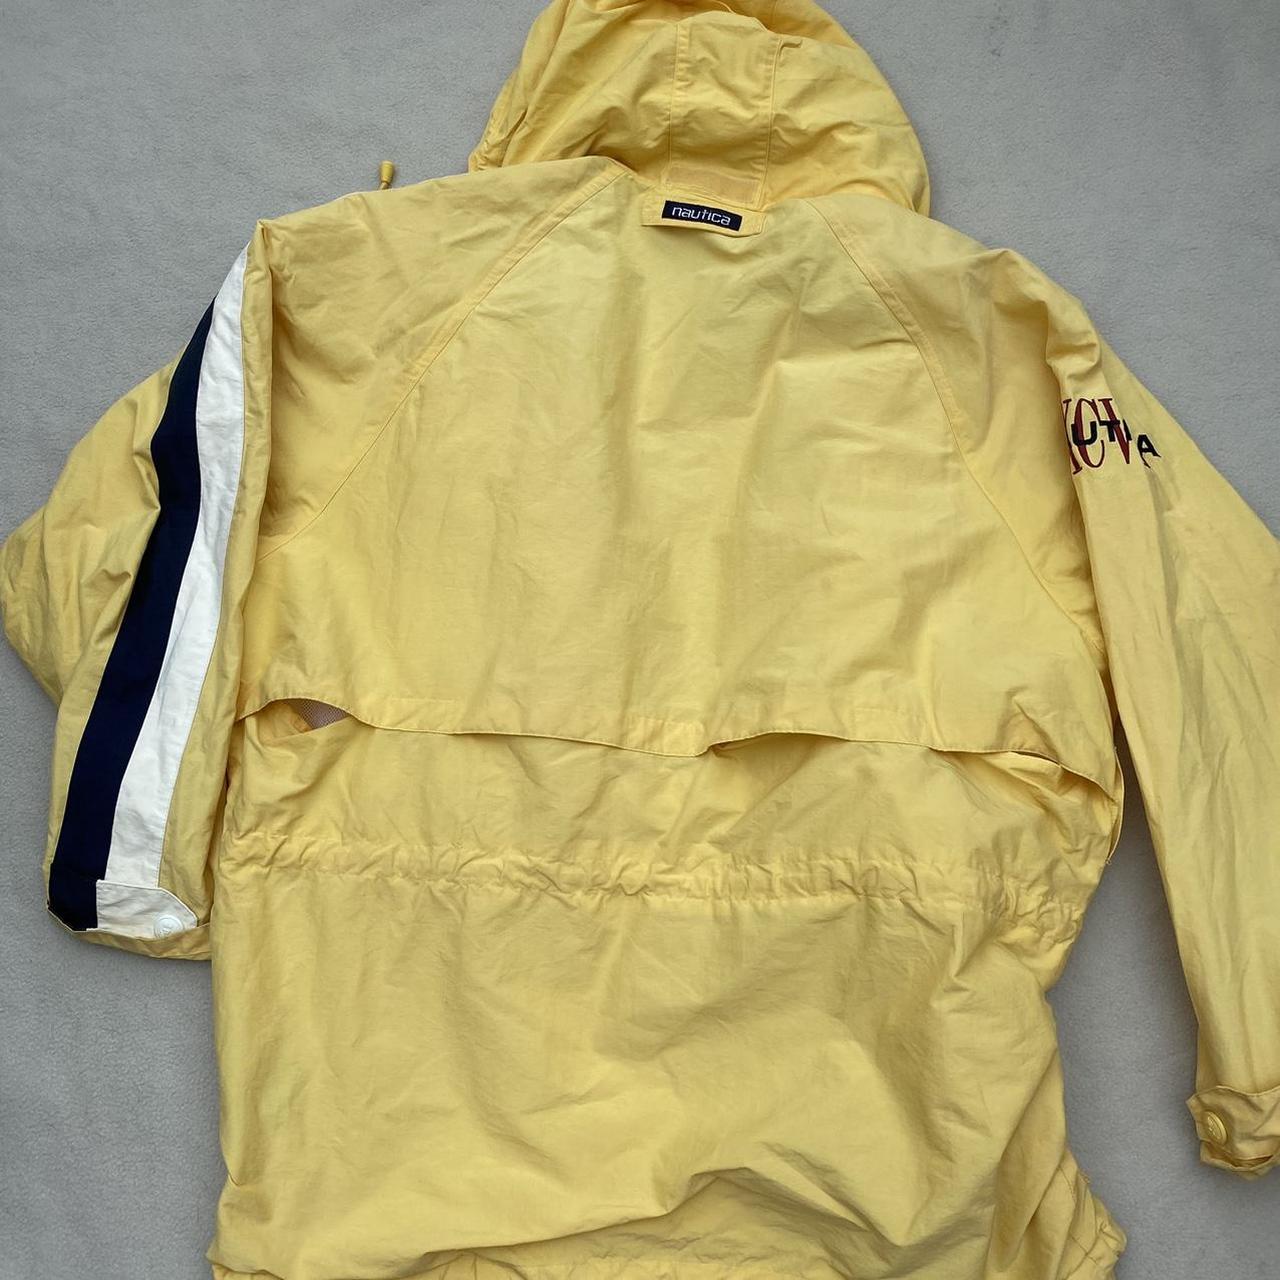 vintage yellow nautica jacket / coat retractable... - Depop